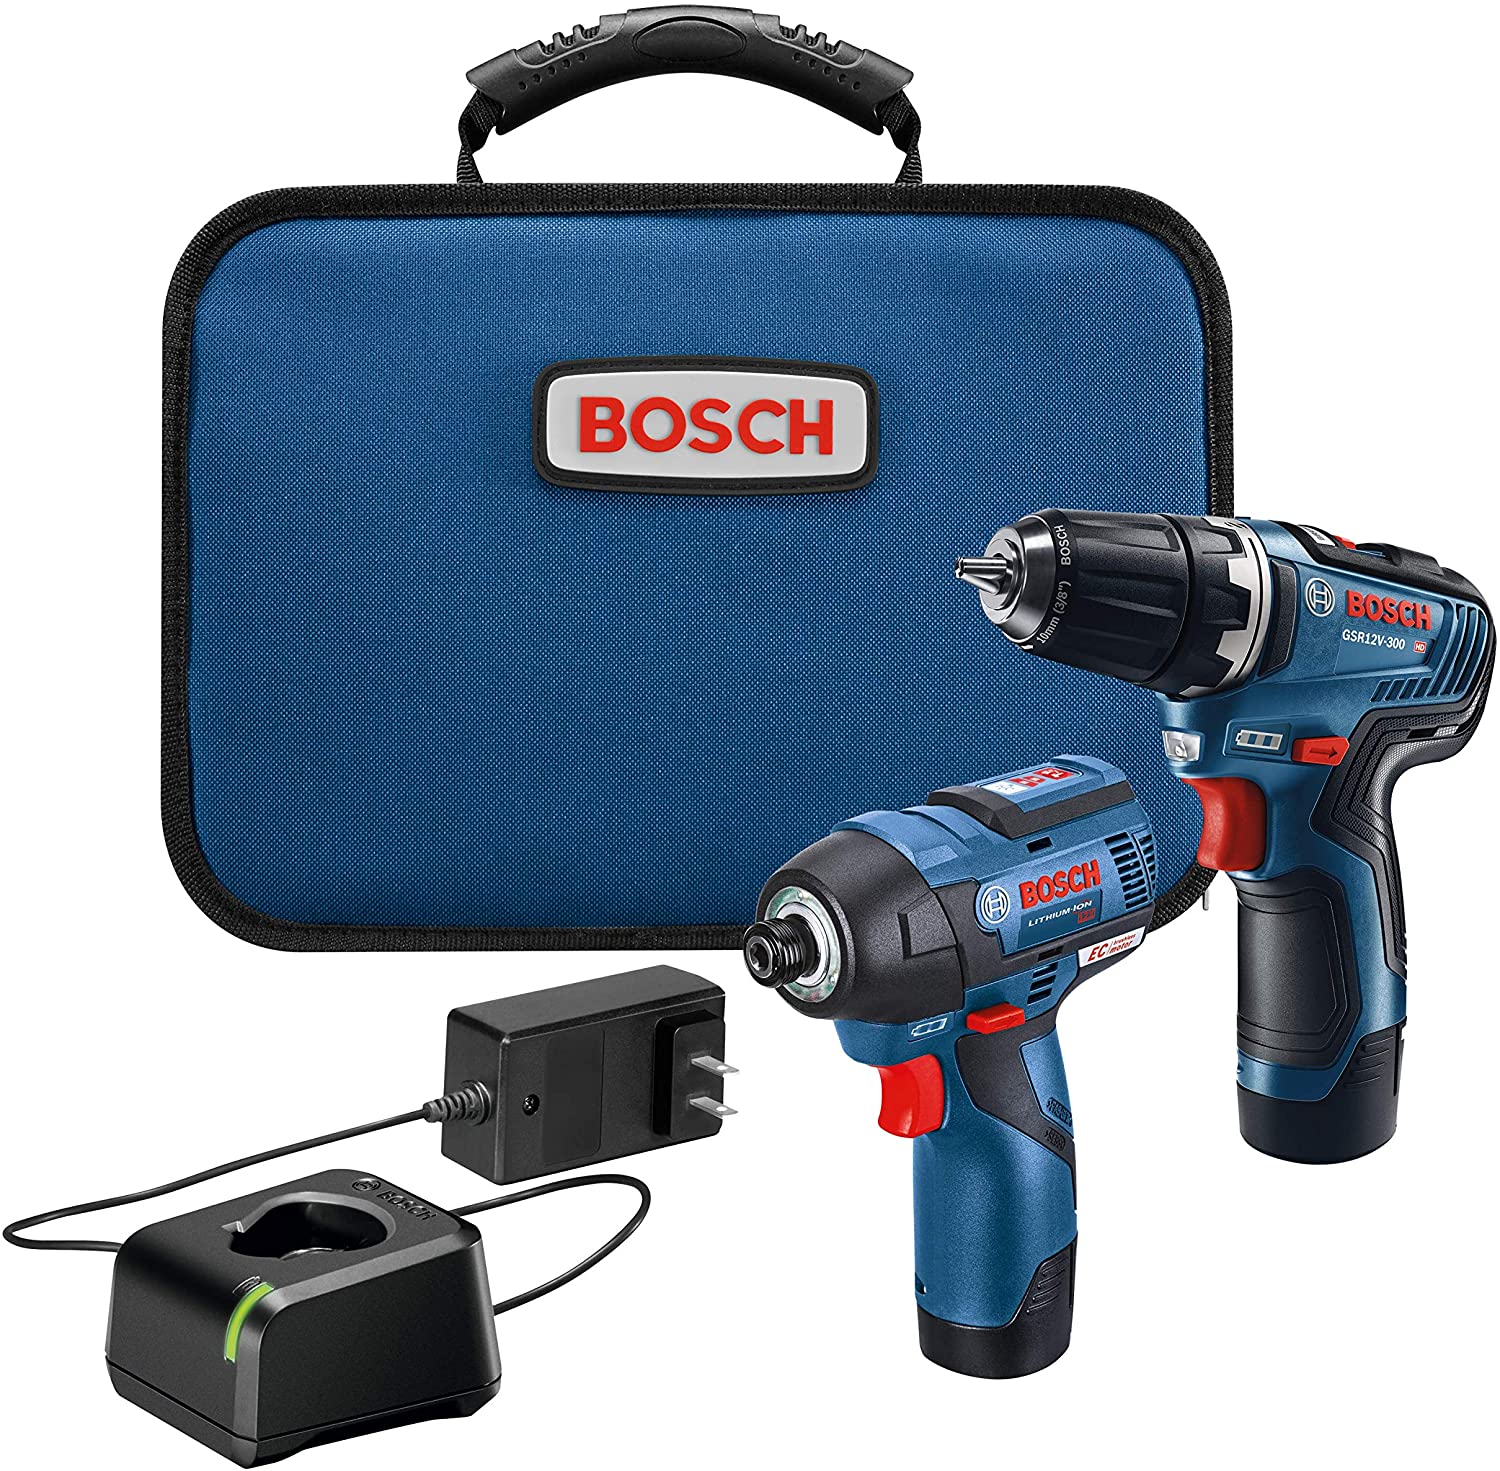 Bosch 12v Brushless Drill/Driver tool set $129